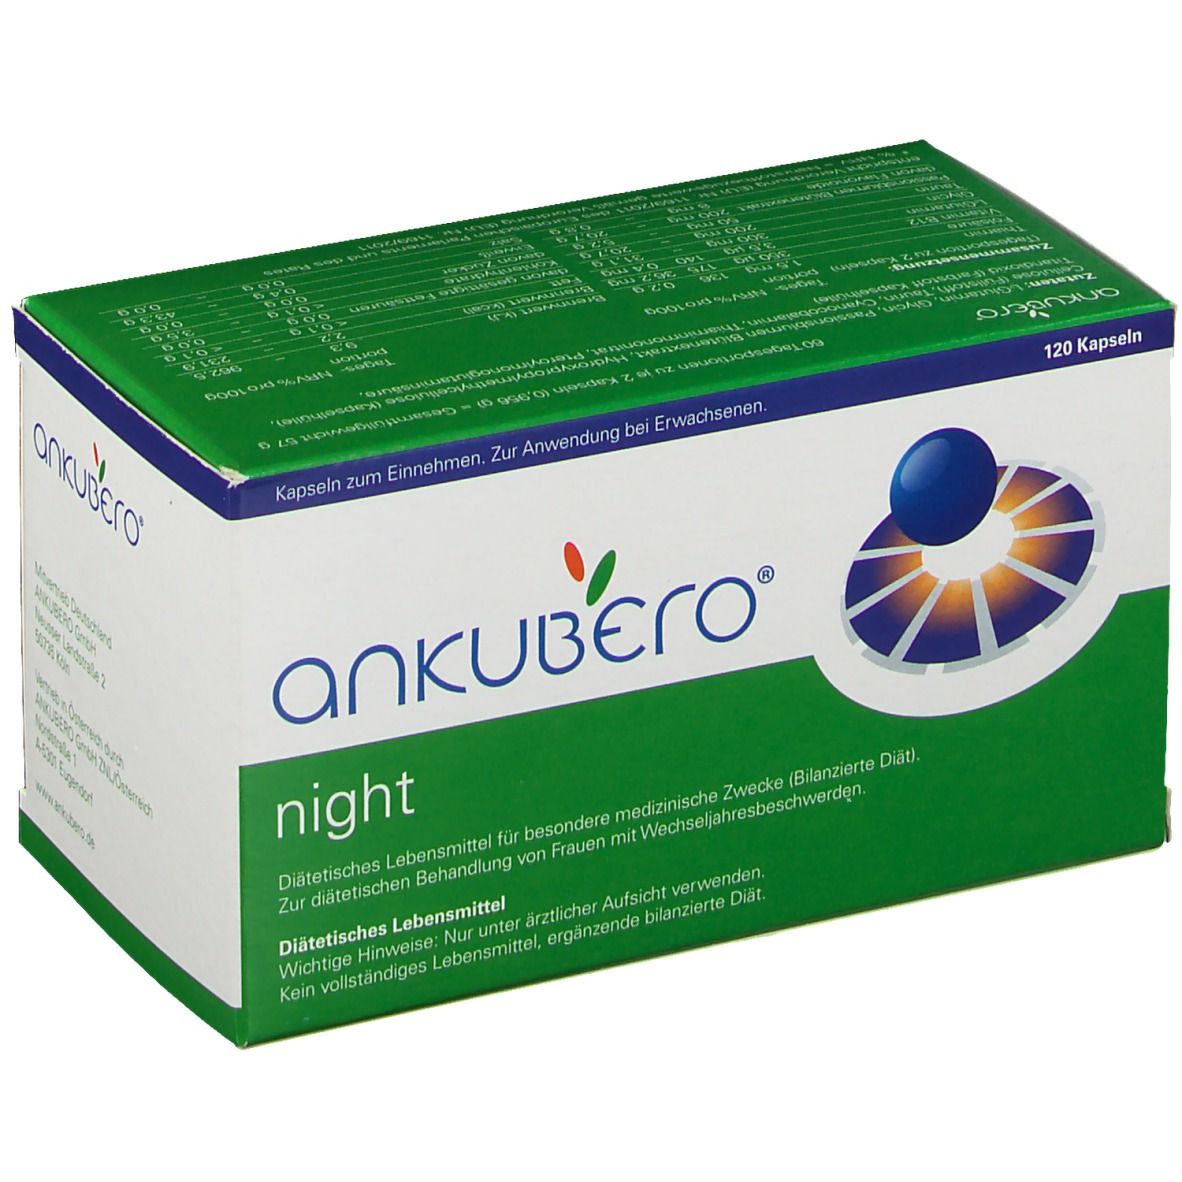 Ankubero® night